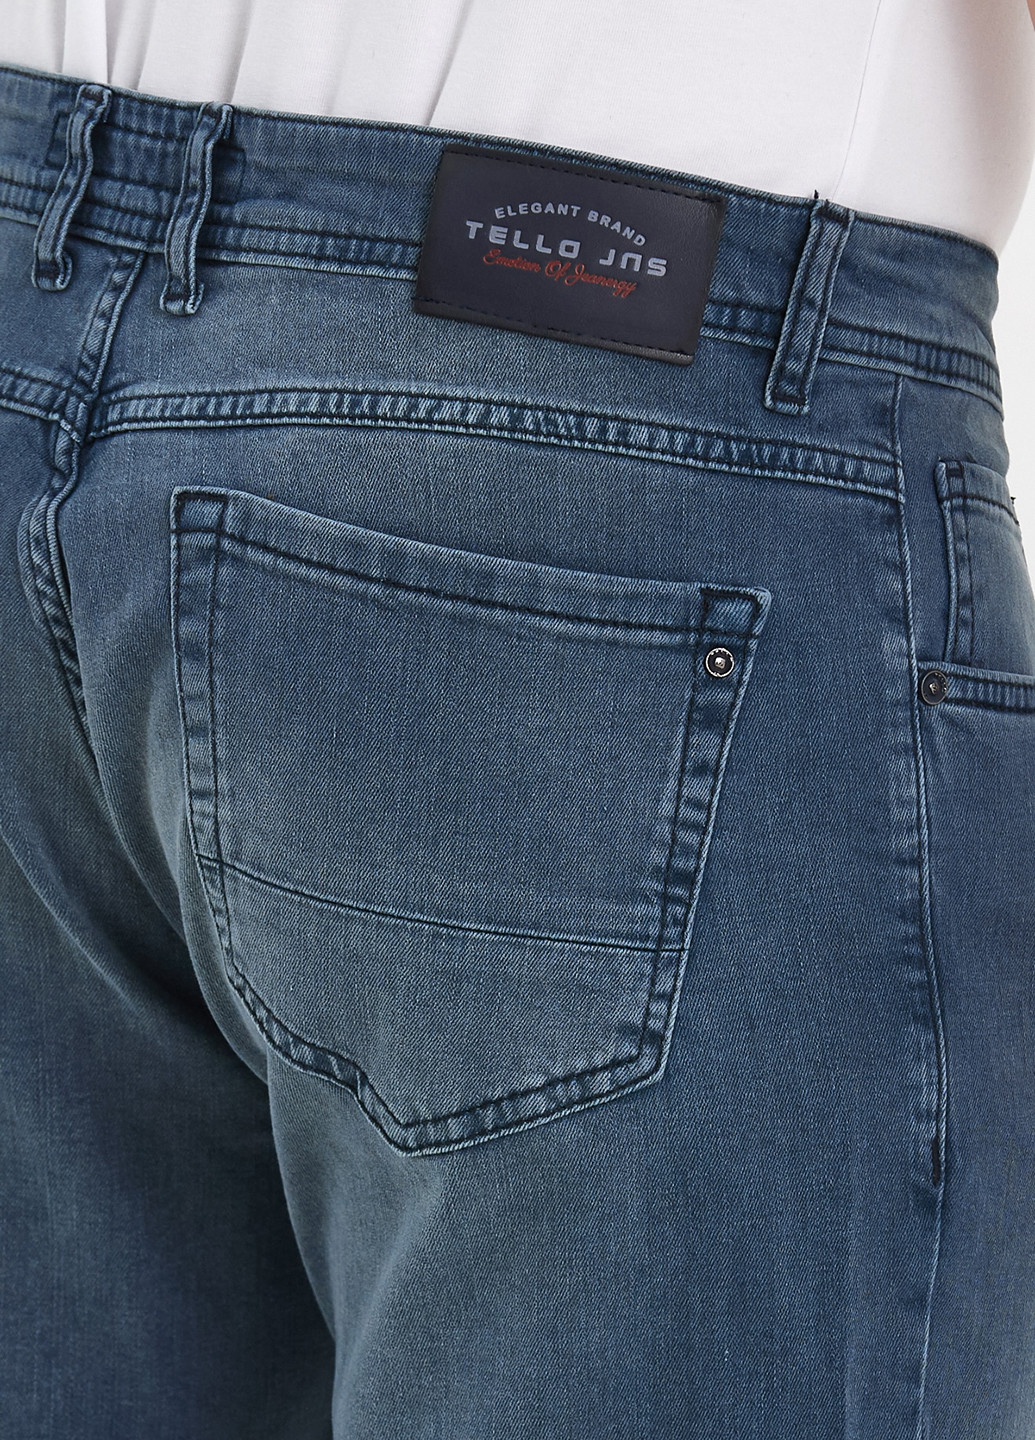 Серо-синие демисезонные прямые джинсы Trend Collection